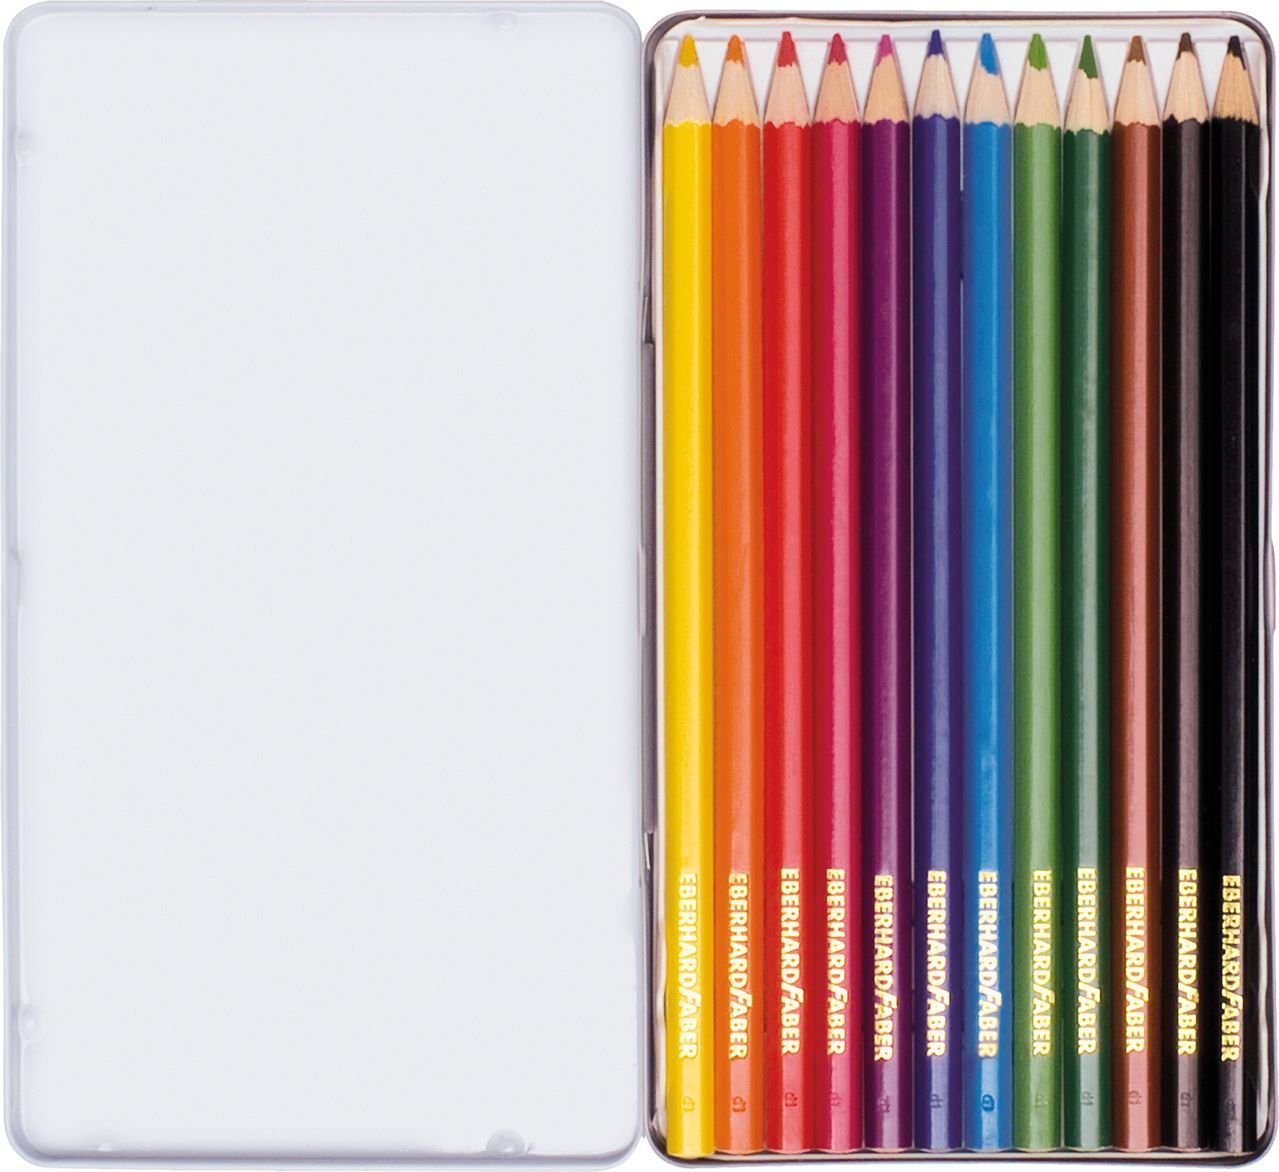 Eberhard-Faber - Coloured pencil hexagonal tin of 12